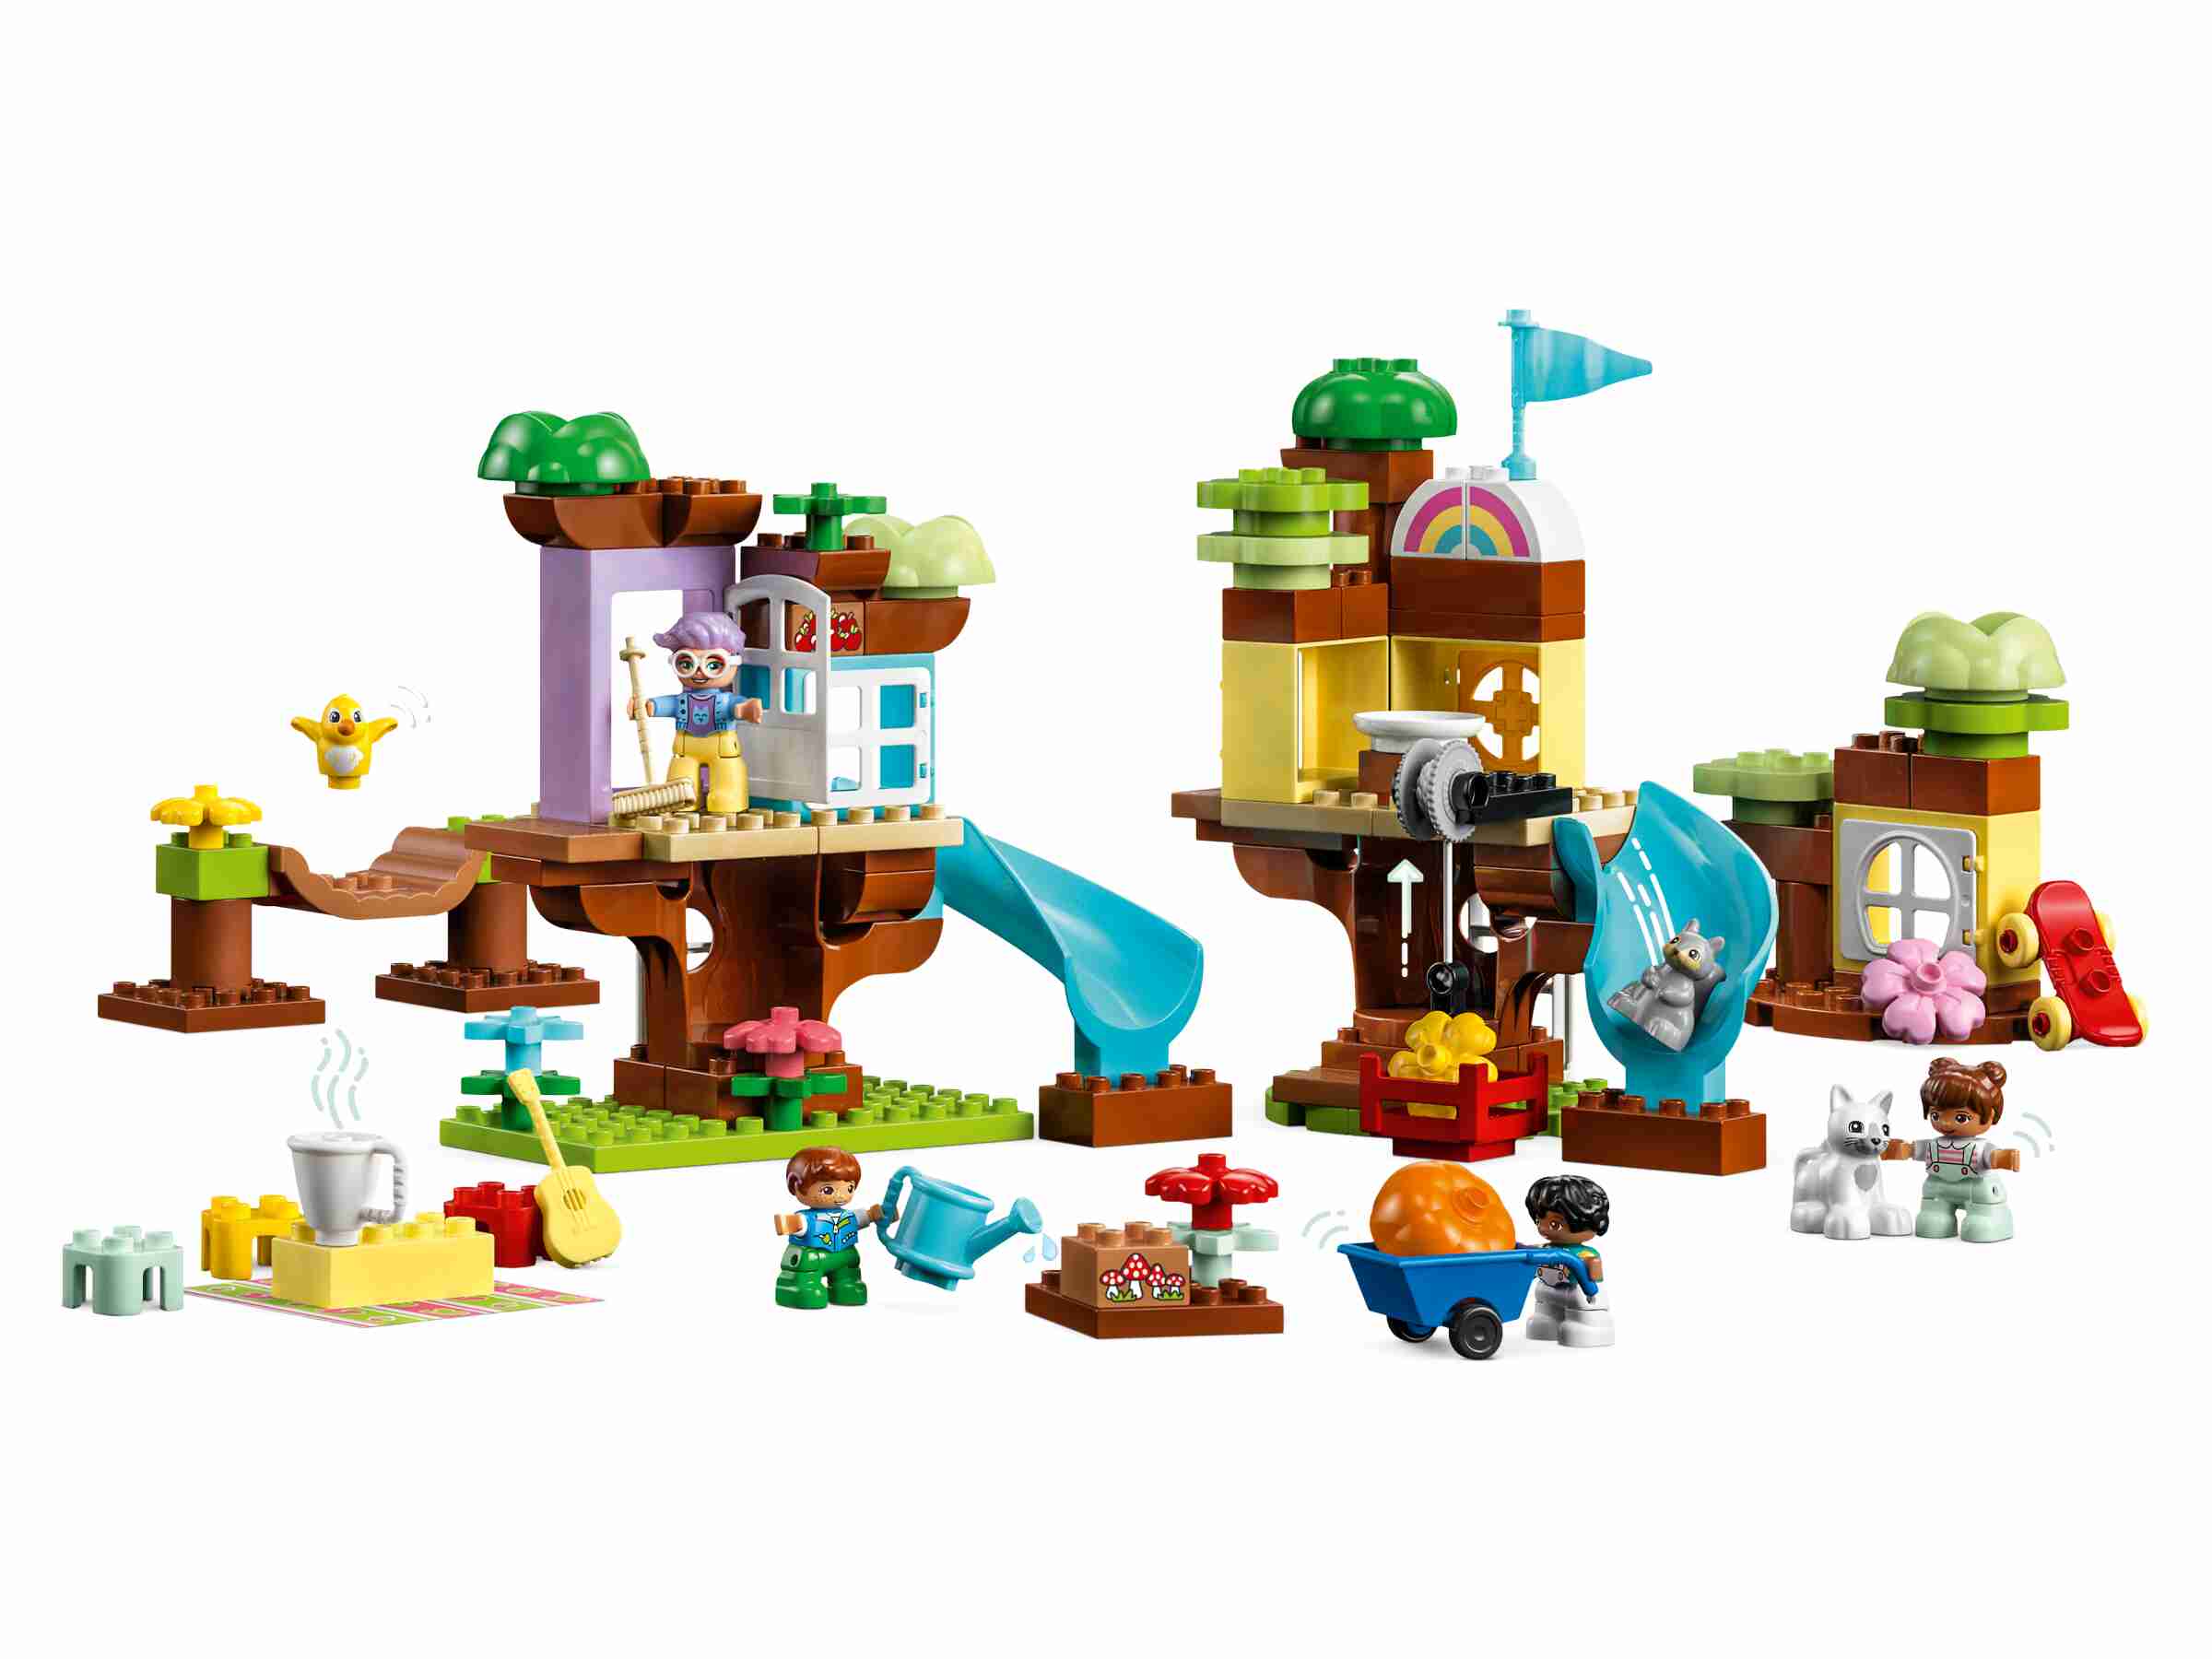 LEGO 10993 DUPLO 3-in-1-Baumhaus, Großmutter, 4 Kinder und 3 Tiere